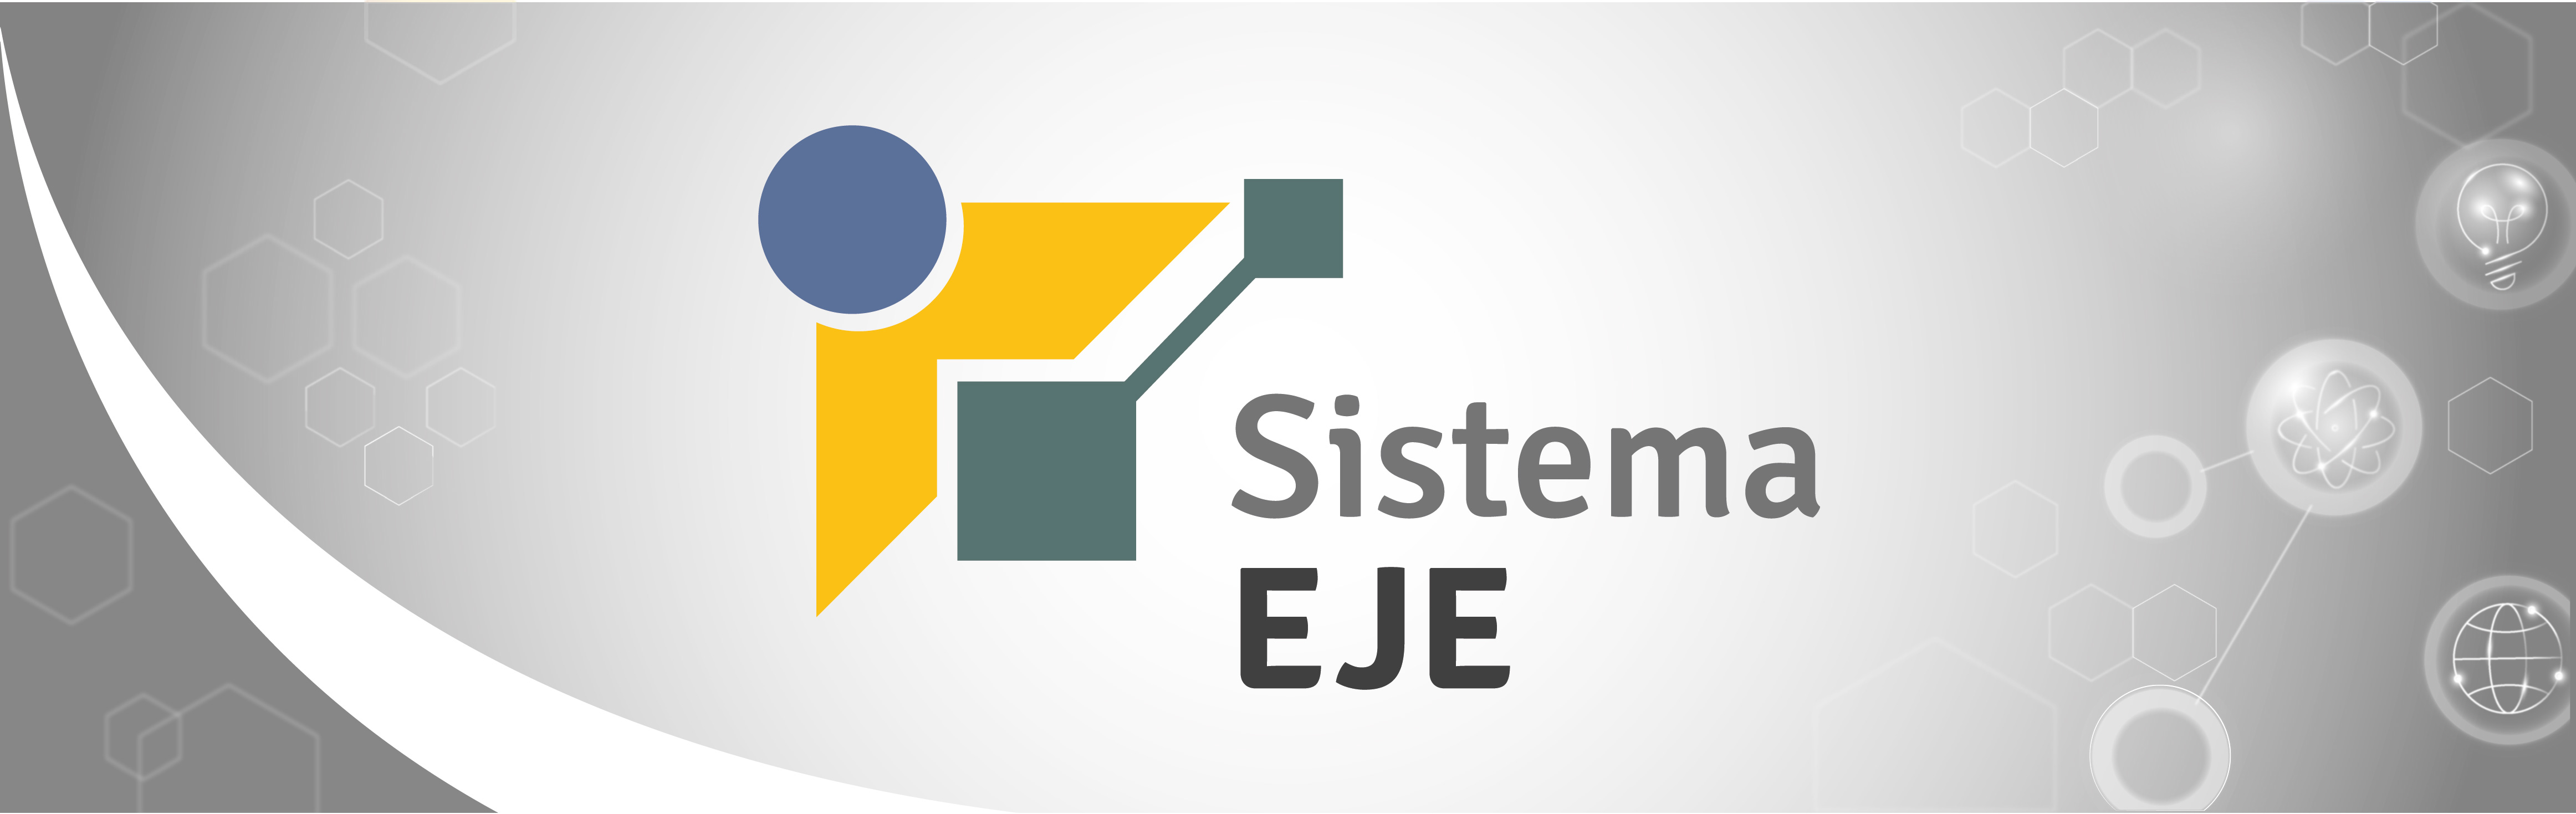 Banner, retangular: sobre fundo com diferentes tonalidades de cinza, há a logomarca do Sistema EJE e ilustrações de alguns elementos relacionados a conexão, sistemas e inovação. O letreiro diz: SISTEMA EJE. 